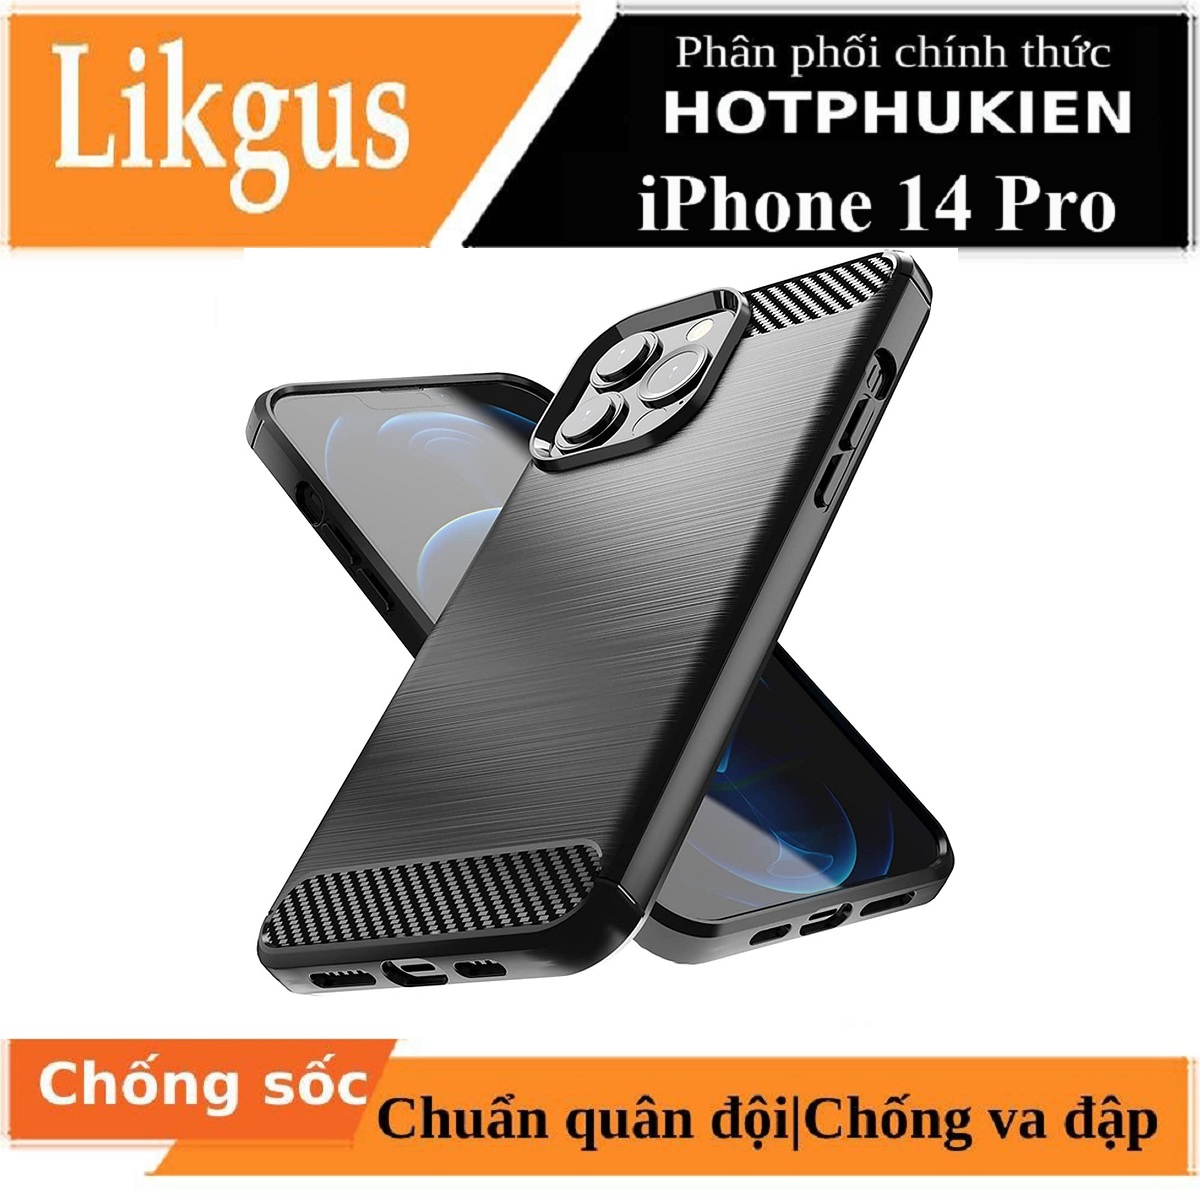 Ốp lưng chống sốc vân kim loại cho iPhone 14 Pro (6.1 inch) hiệu Likgus (chuẩn quân đội, chống va đập, chống vân tay) - Hàng nhập khẩu